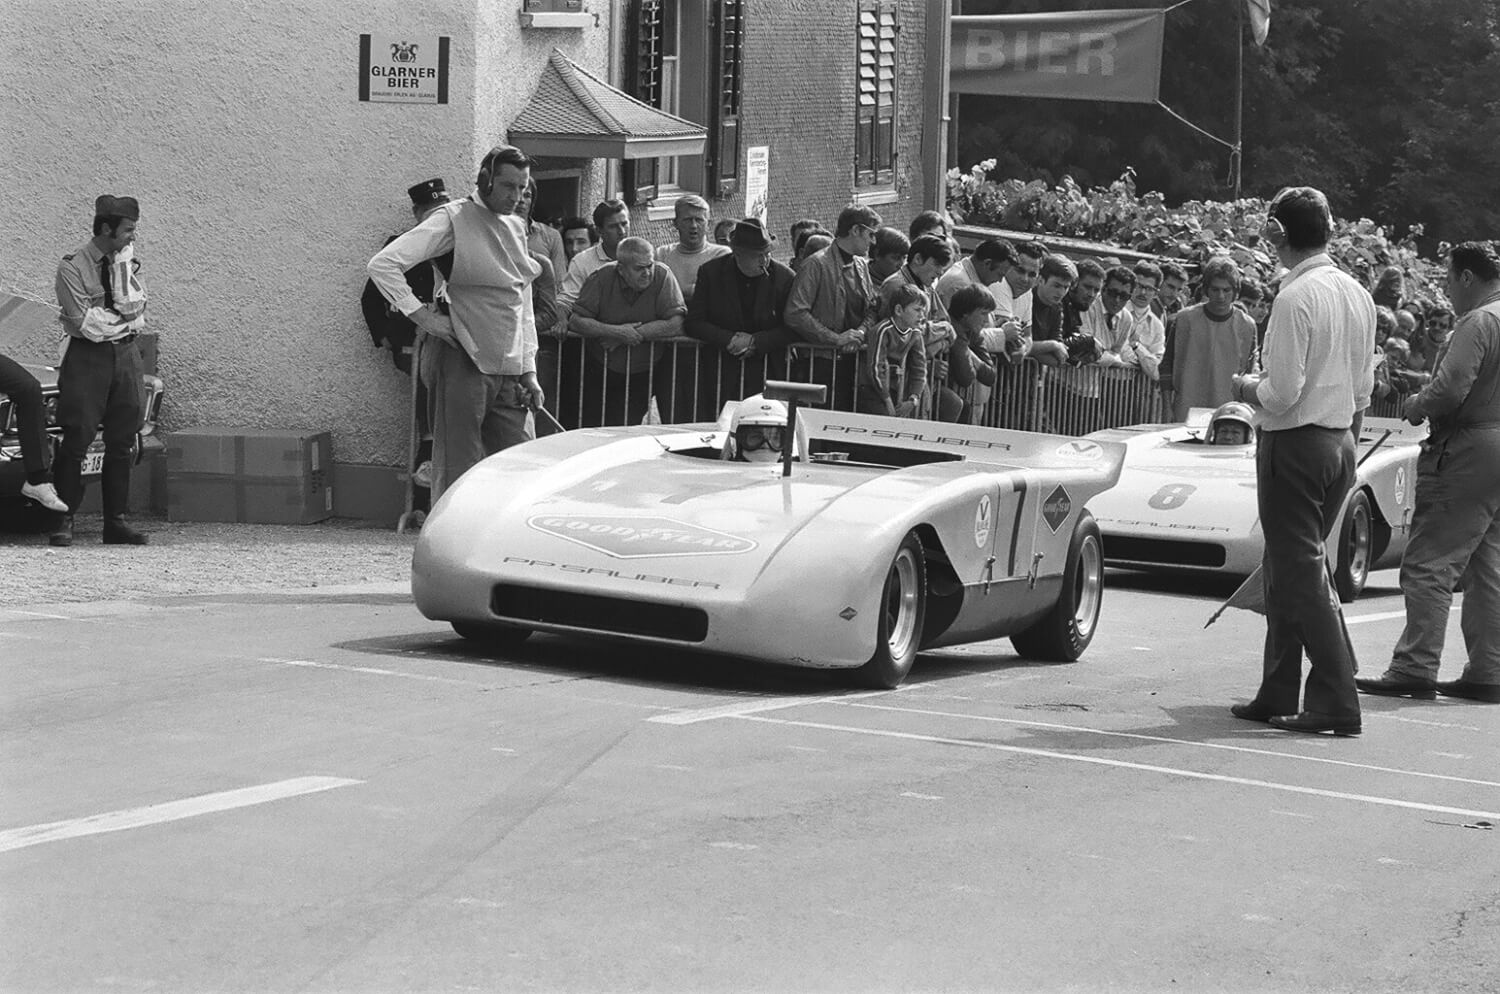 Peter Sauber startet mit seinem Sauber C1 zum Kerenzerbergrennen 1970.